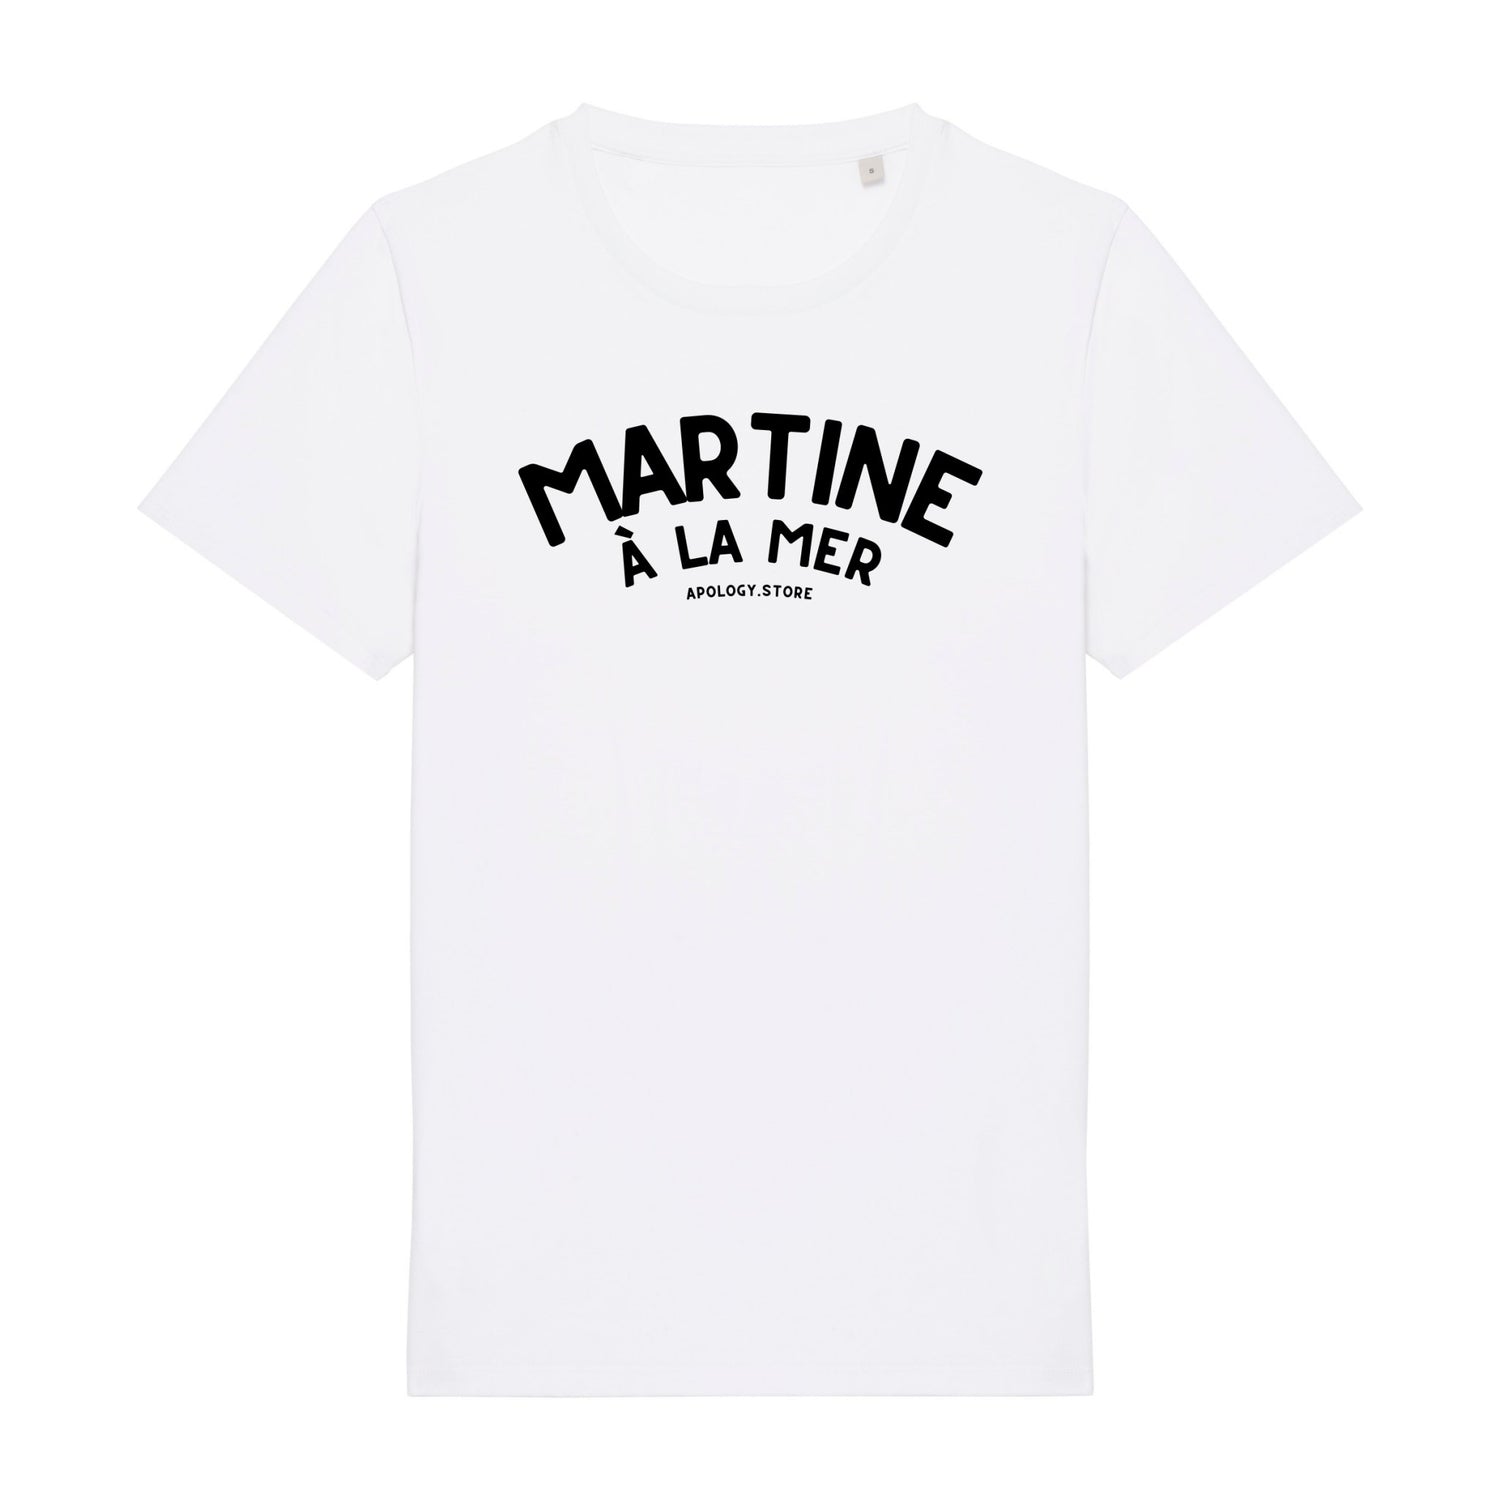 T-shirt Martine à la Mer - Fabriqué au Portugal XS Blanc - Imprimé en France